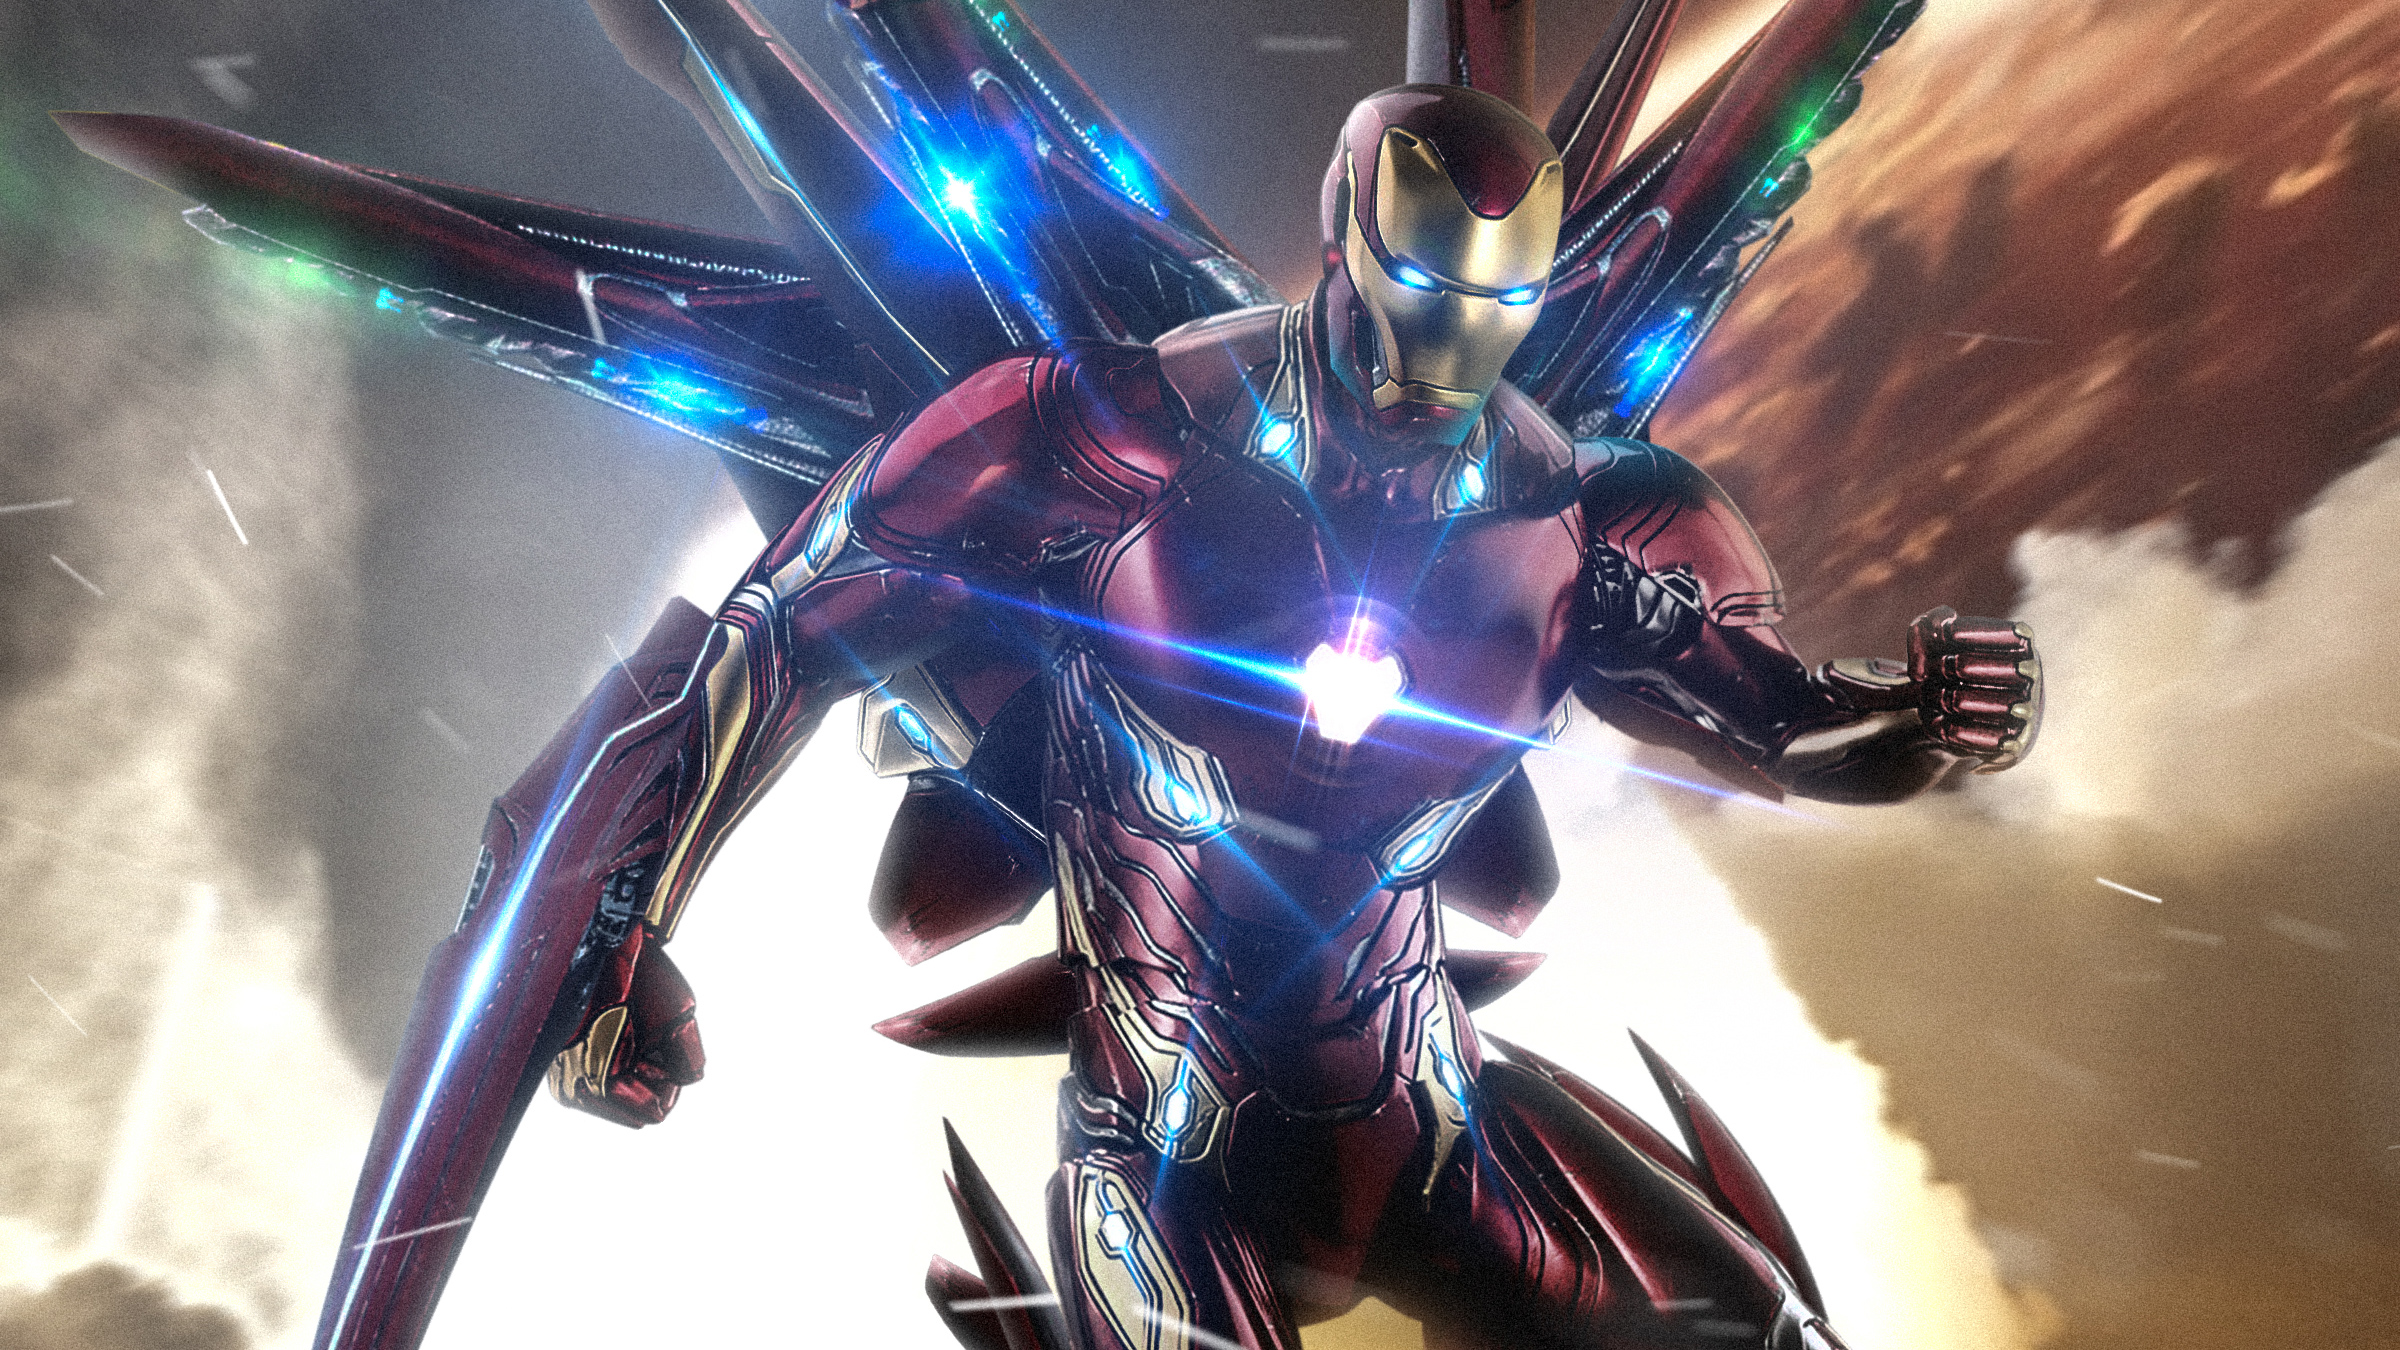 iron man, avengers, tony stark, avengers endgame, the avengers, movie, armor 8K